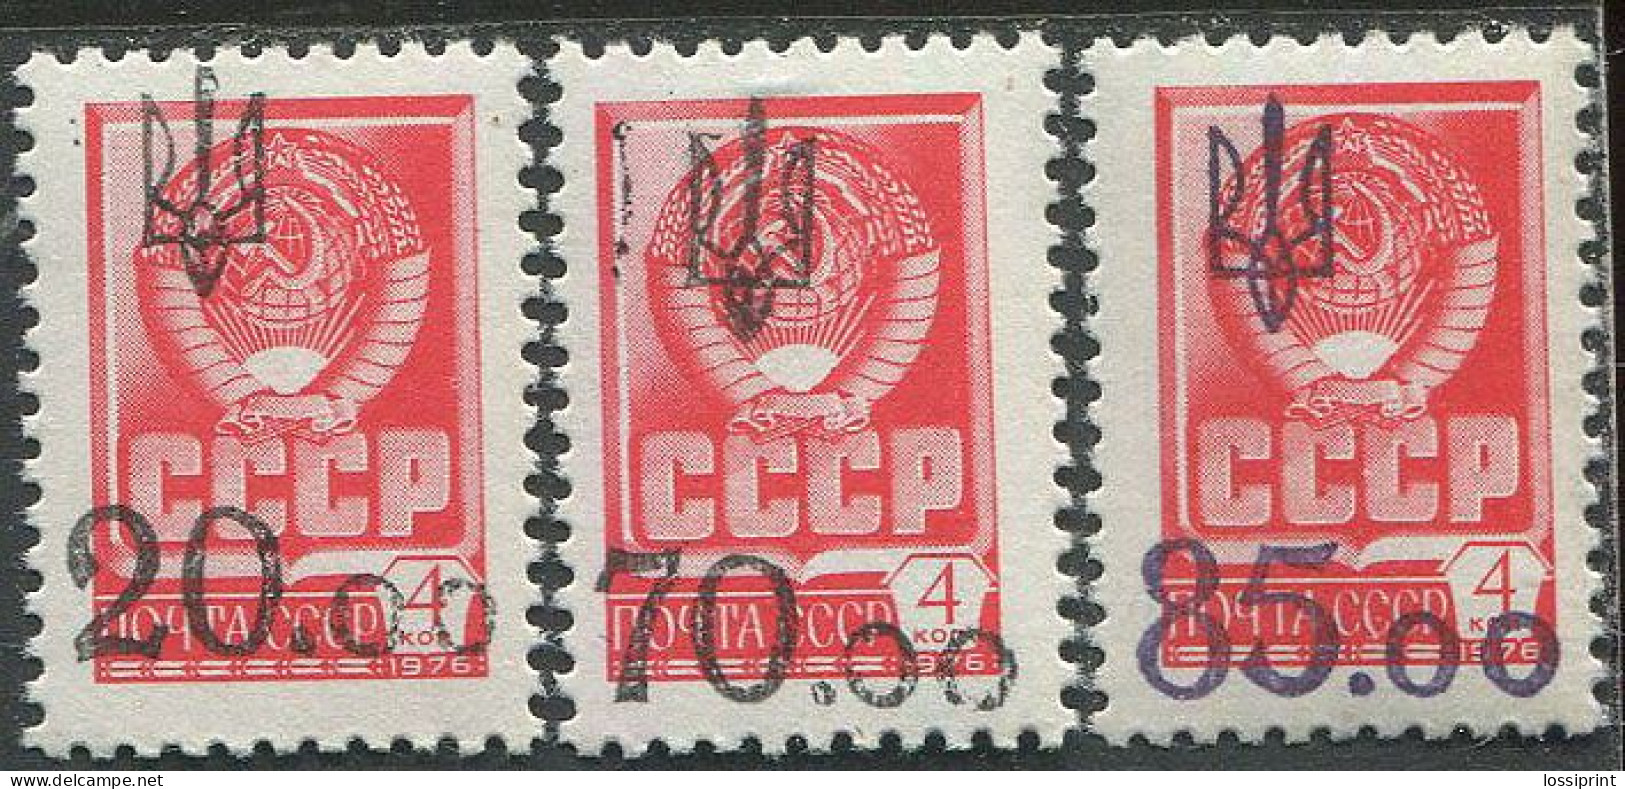 Ukraina:Ukraine:Unused Overprinted Stamps, Poltava, Probably 1993, MNH - Ukraine